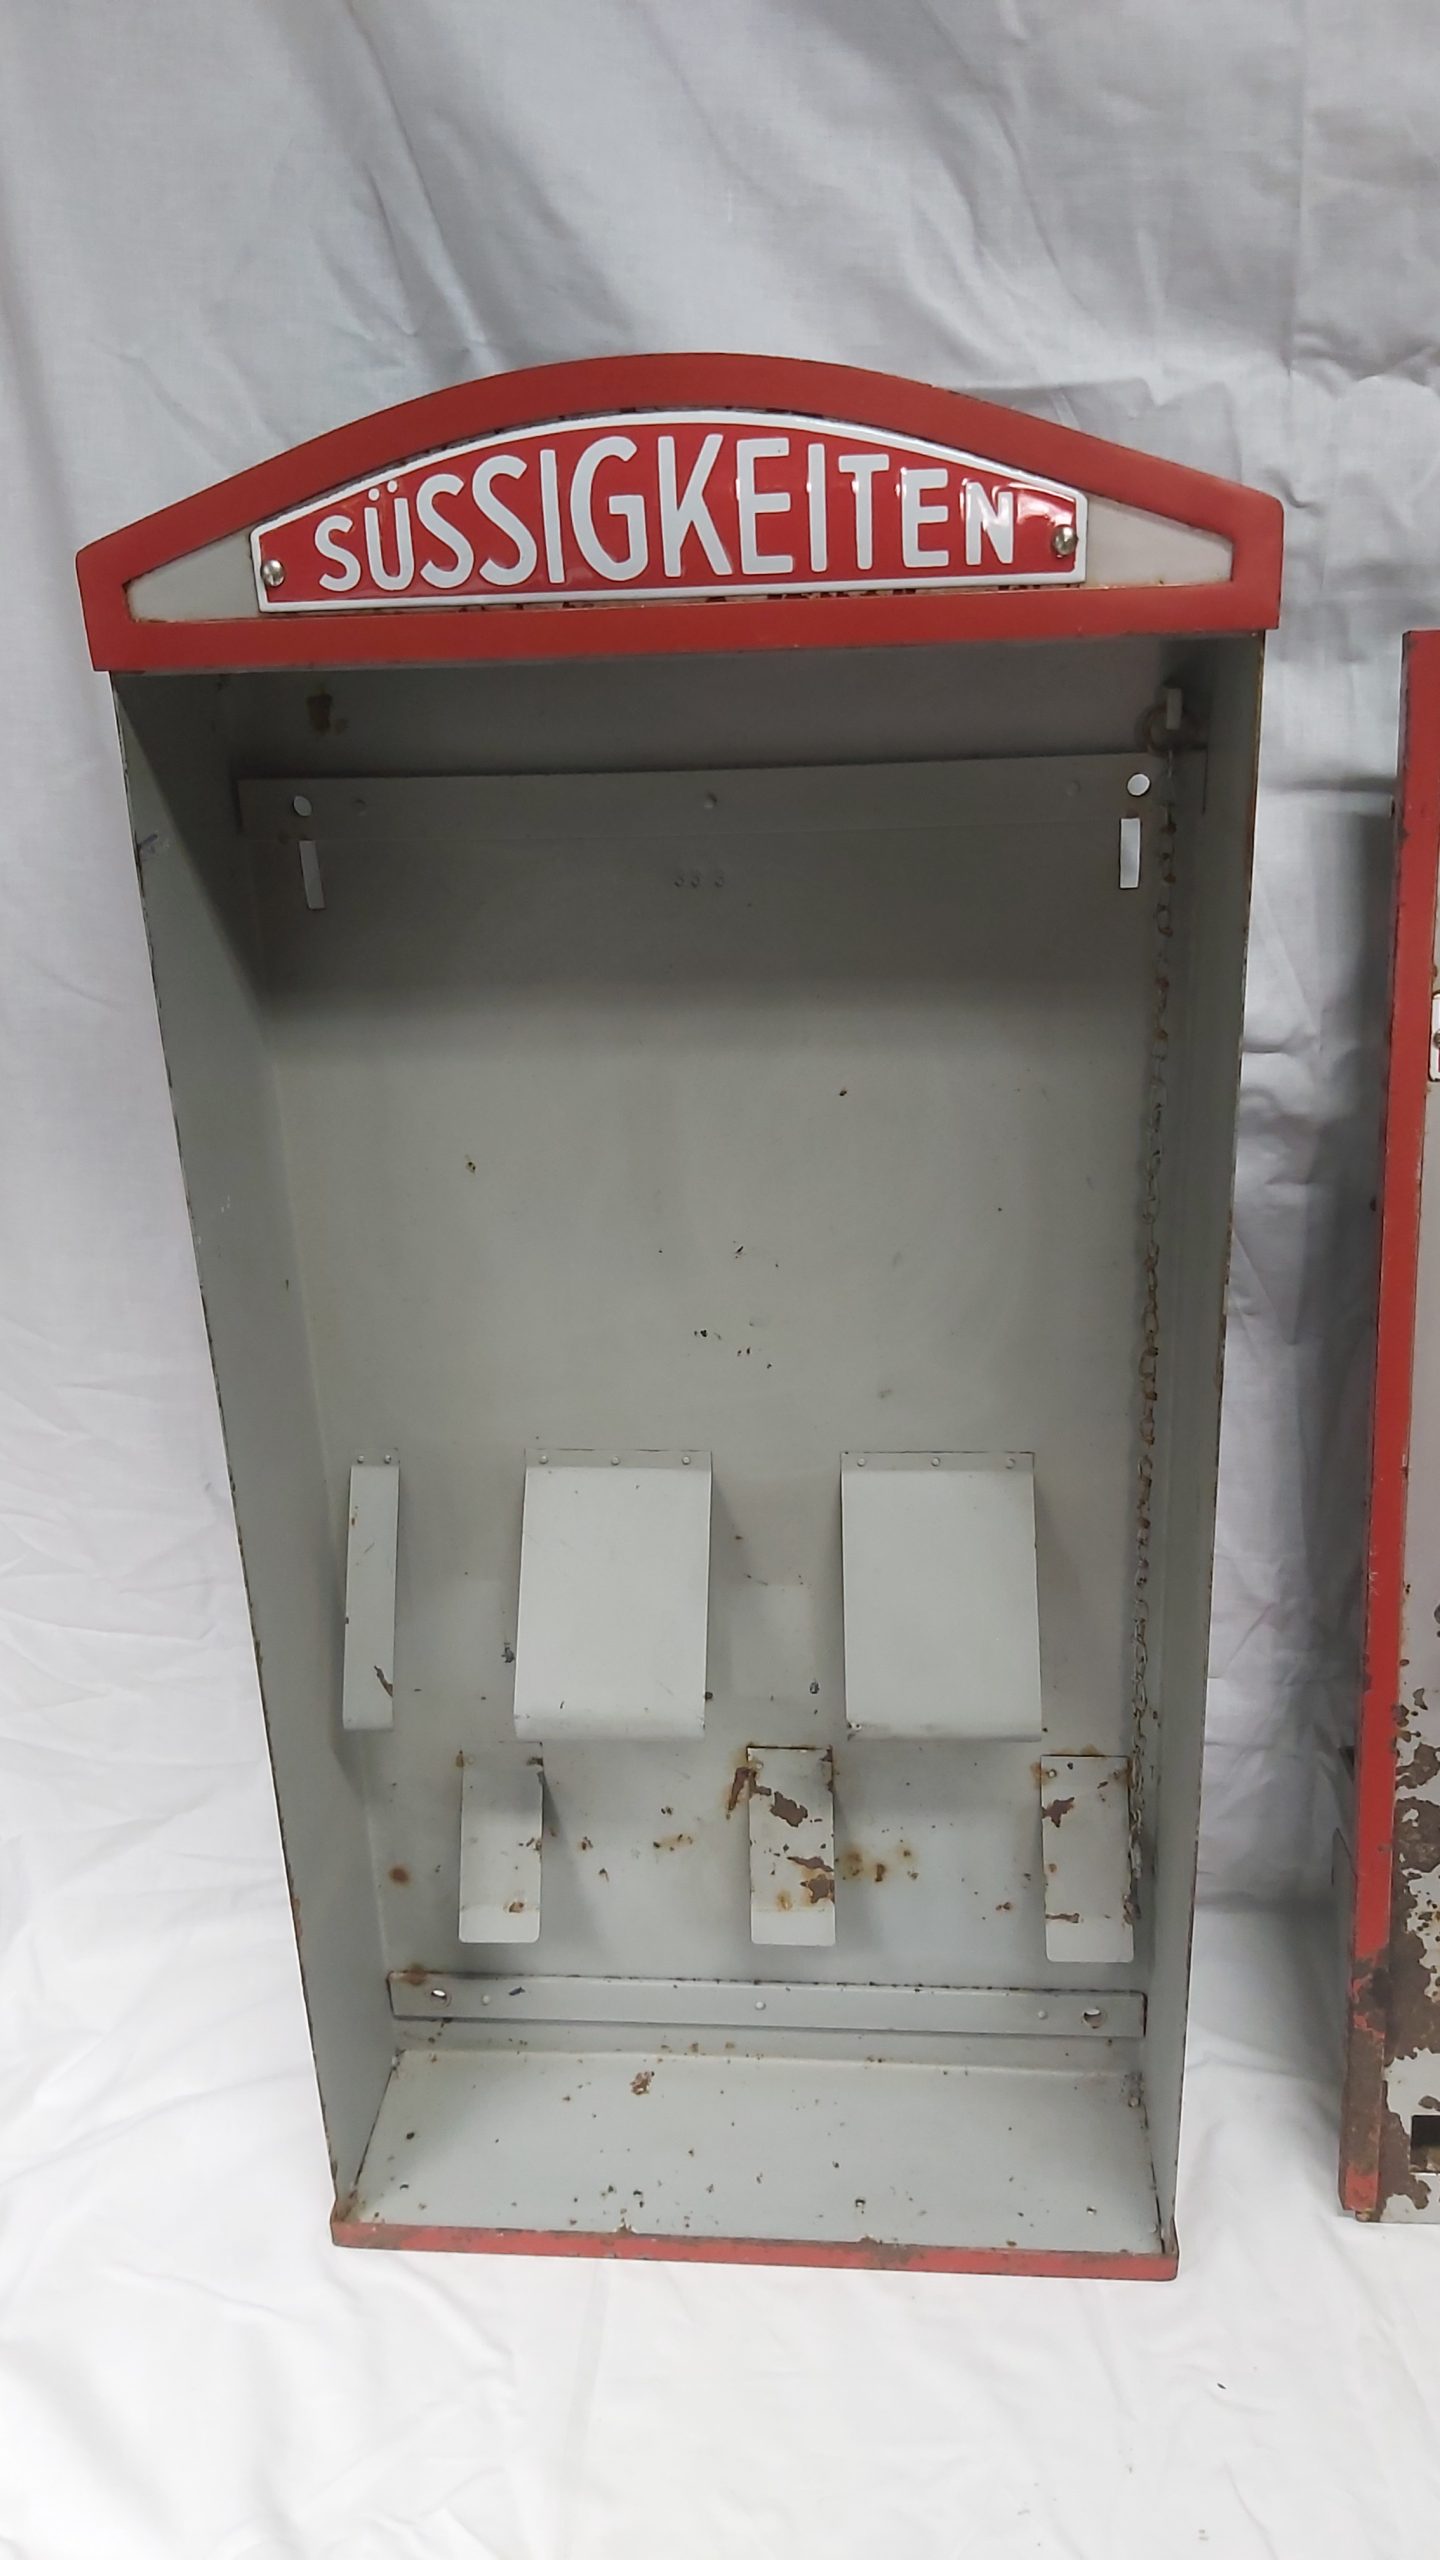 Süssigkeitenautomat mit Emailschildern